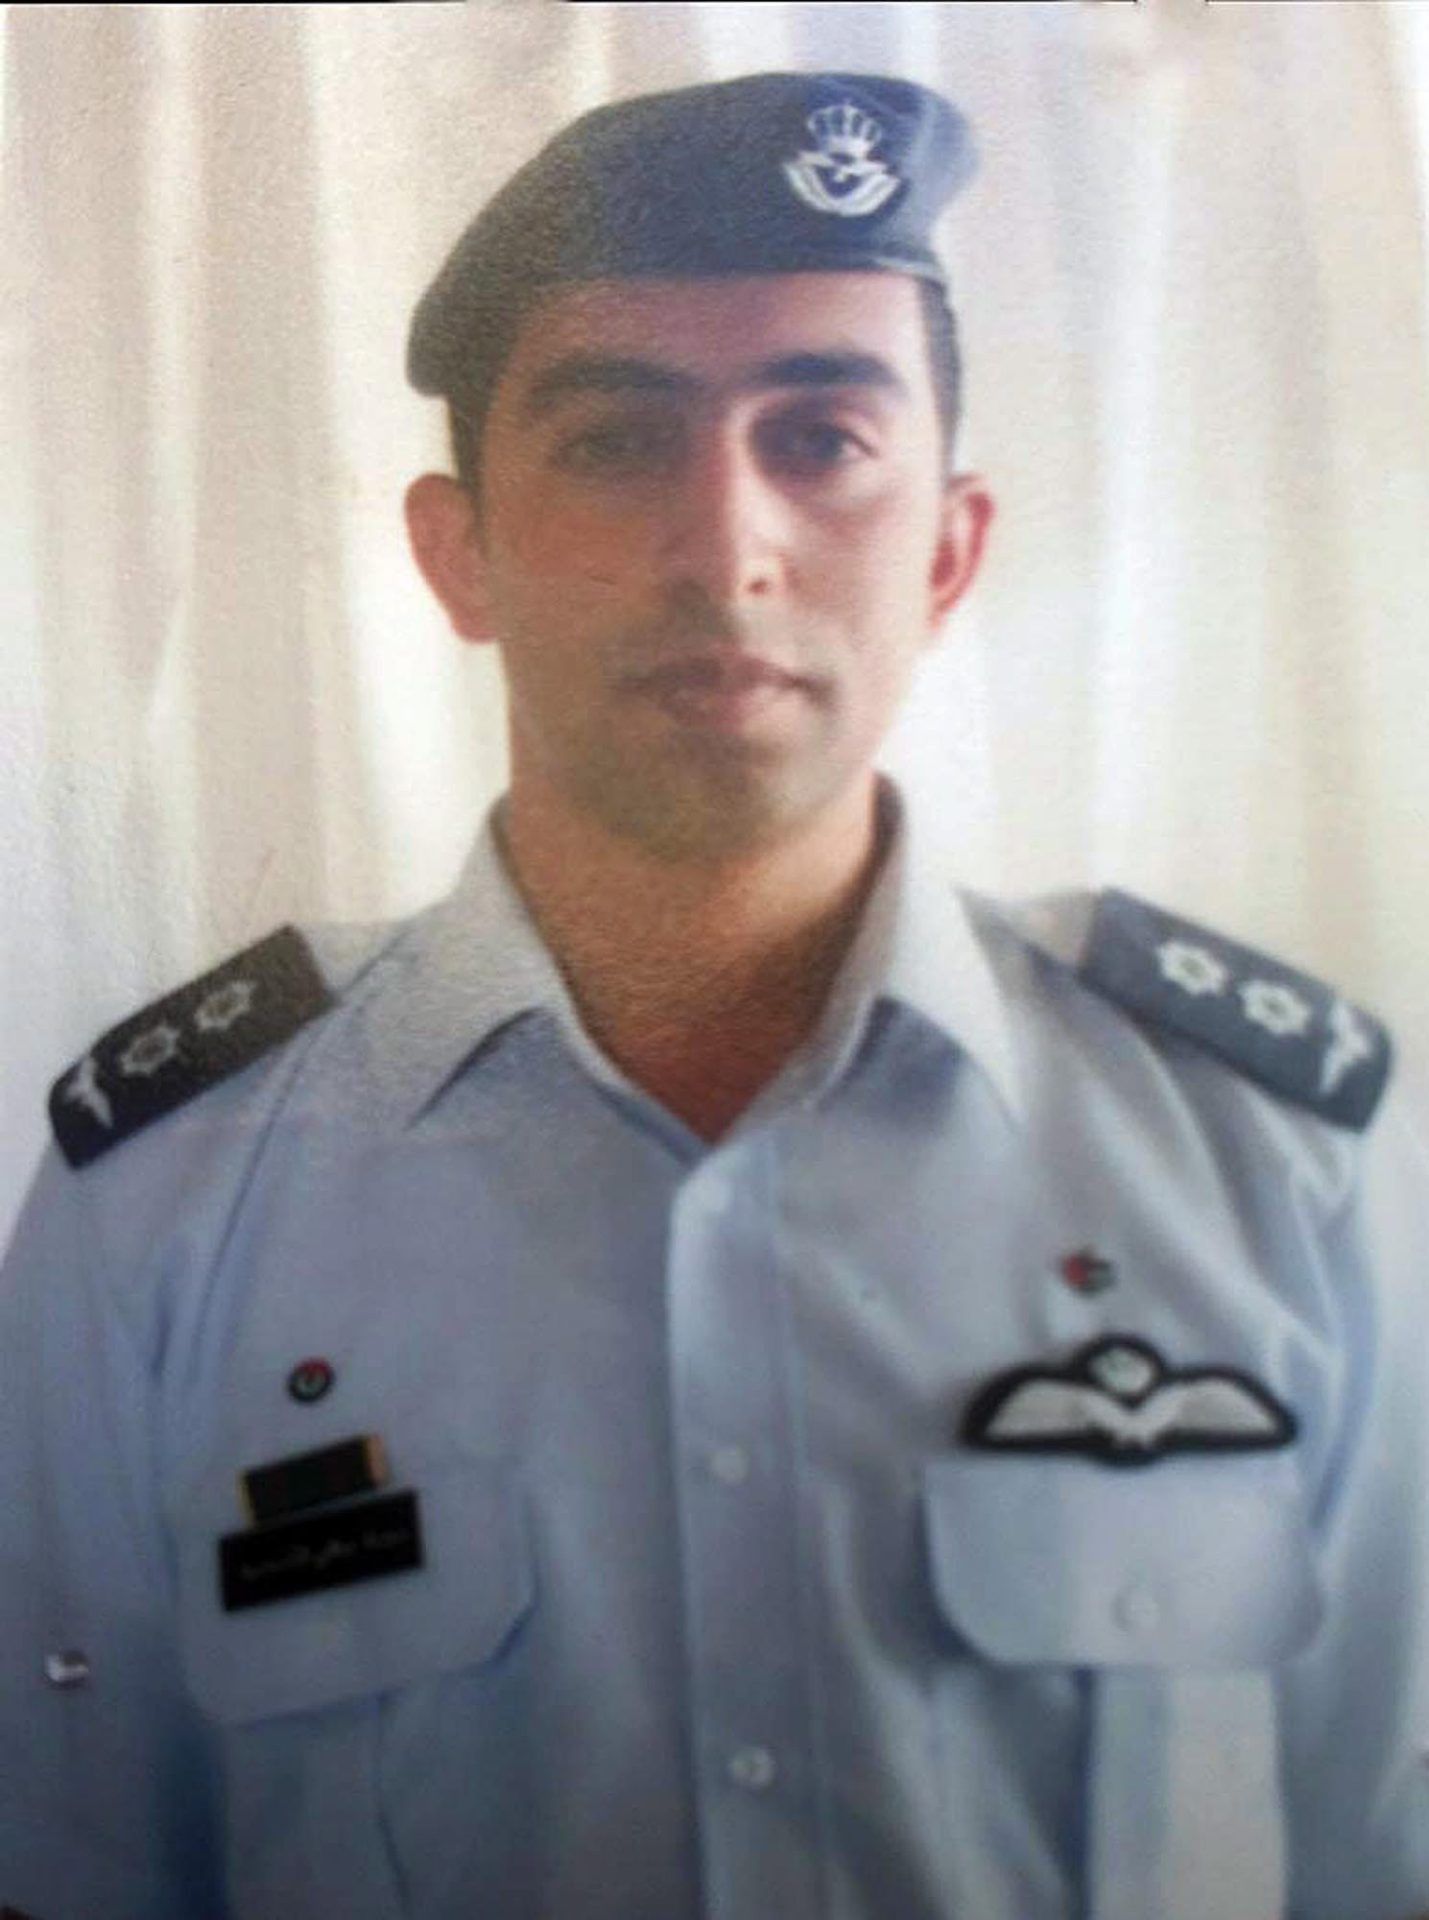 Piloto jordano foi queimado vivo pelo Estado Islâmico